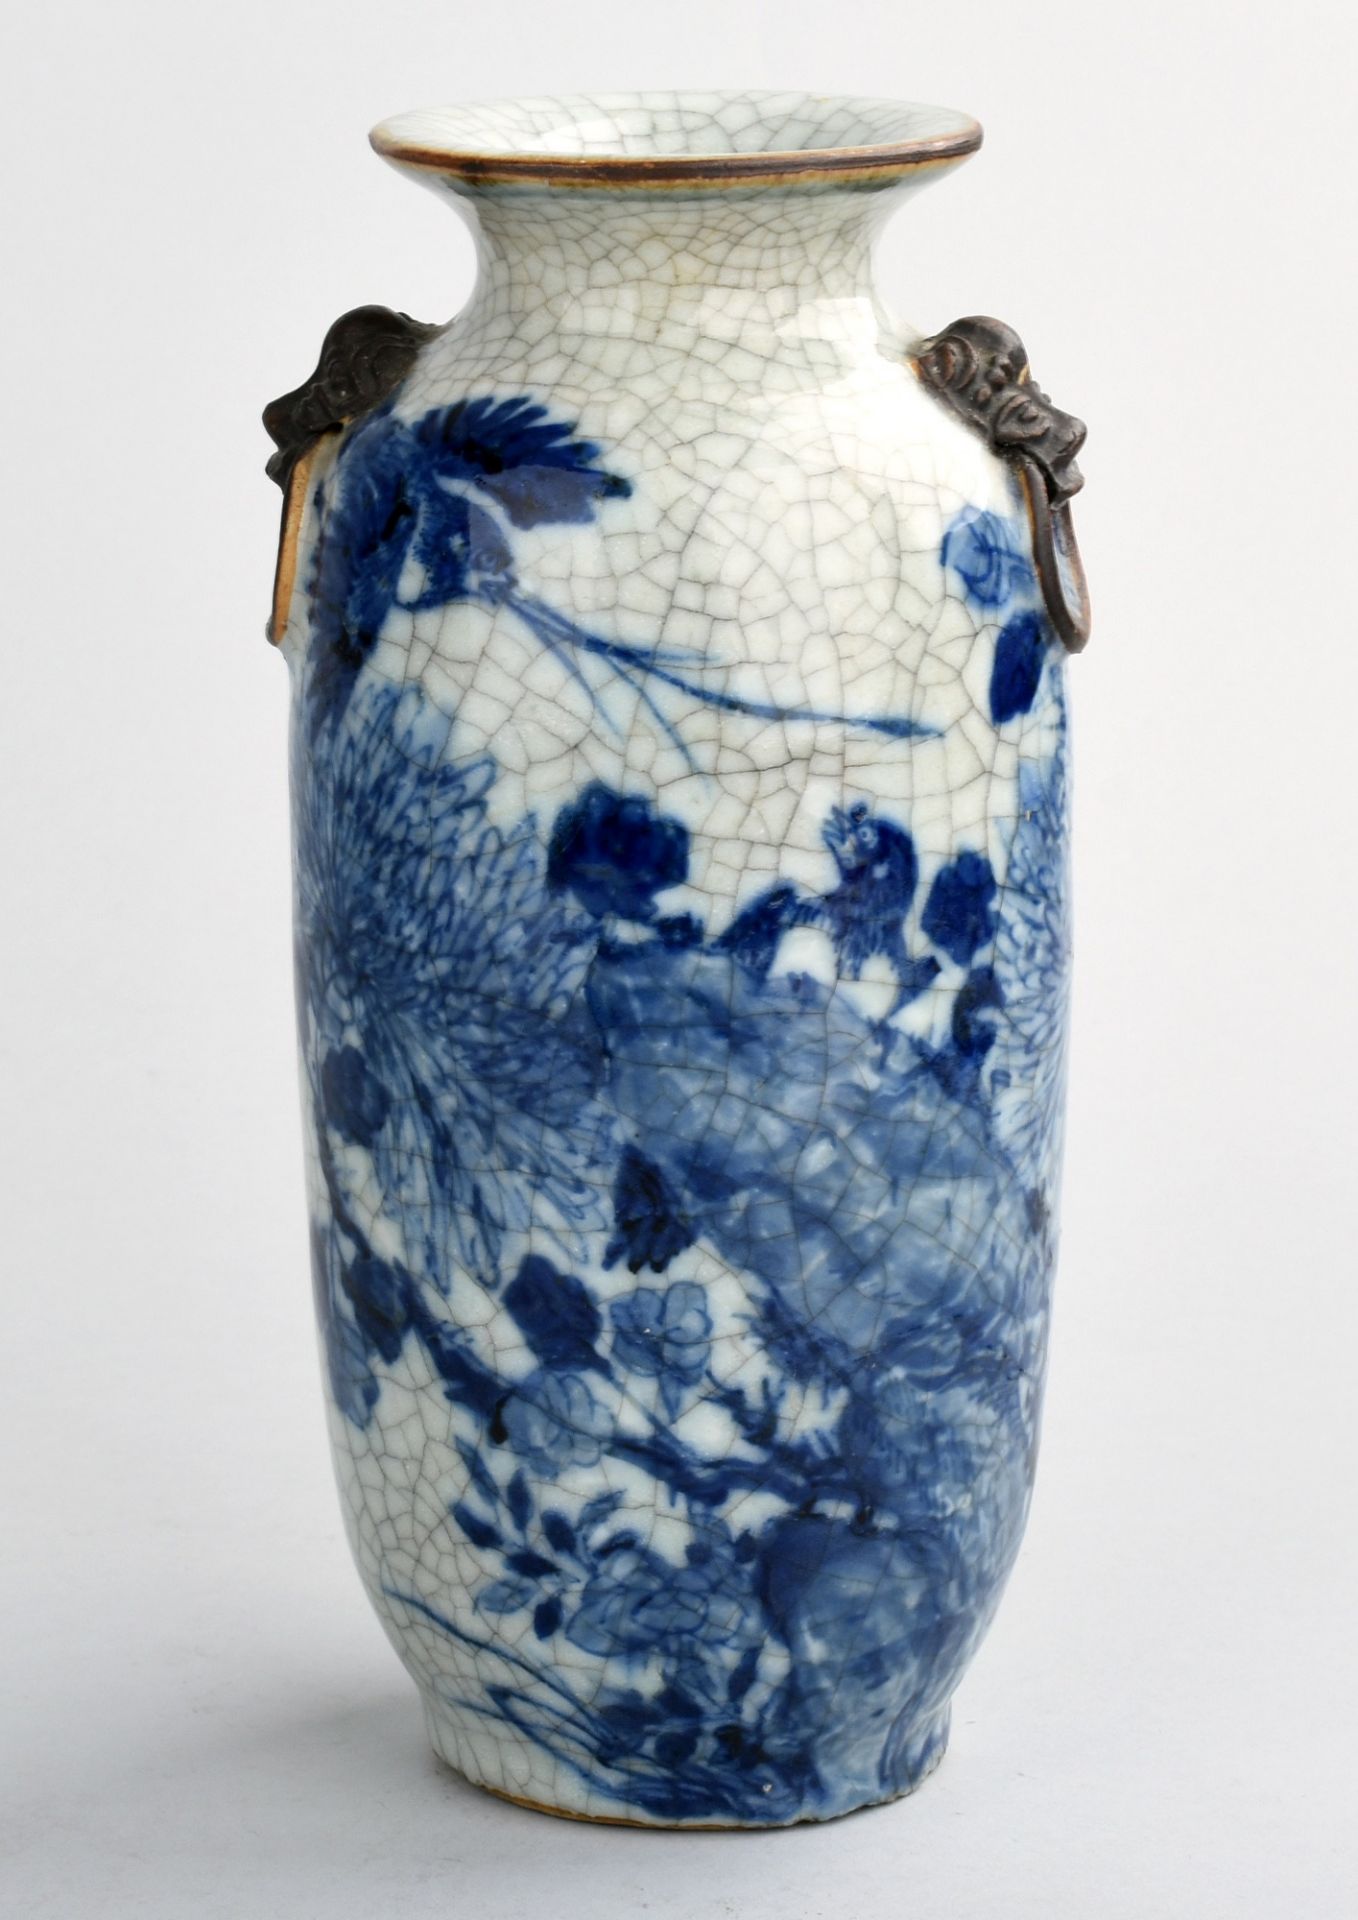 Asiatische Vase Pressmarke, brauner Scherben, Stangenform mit geschnürtem Hals, graue Krakeleeglasur - Bild 2 aus 5